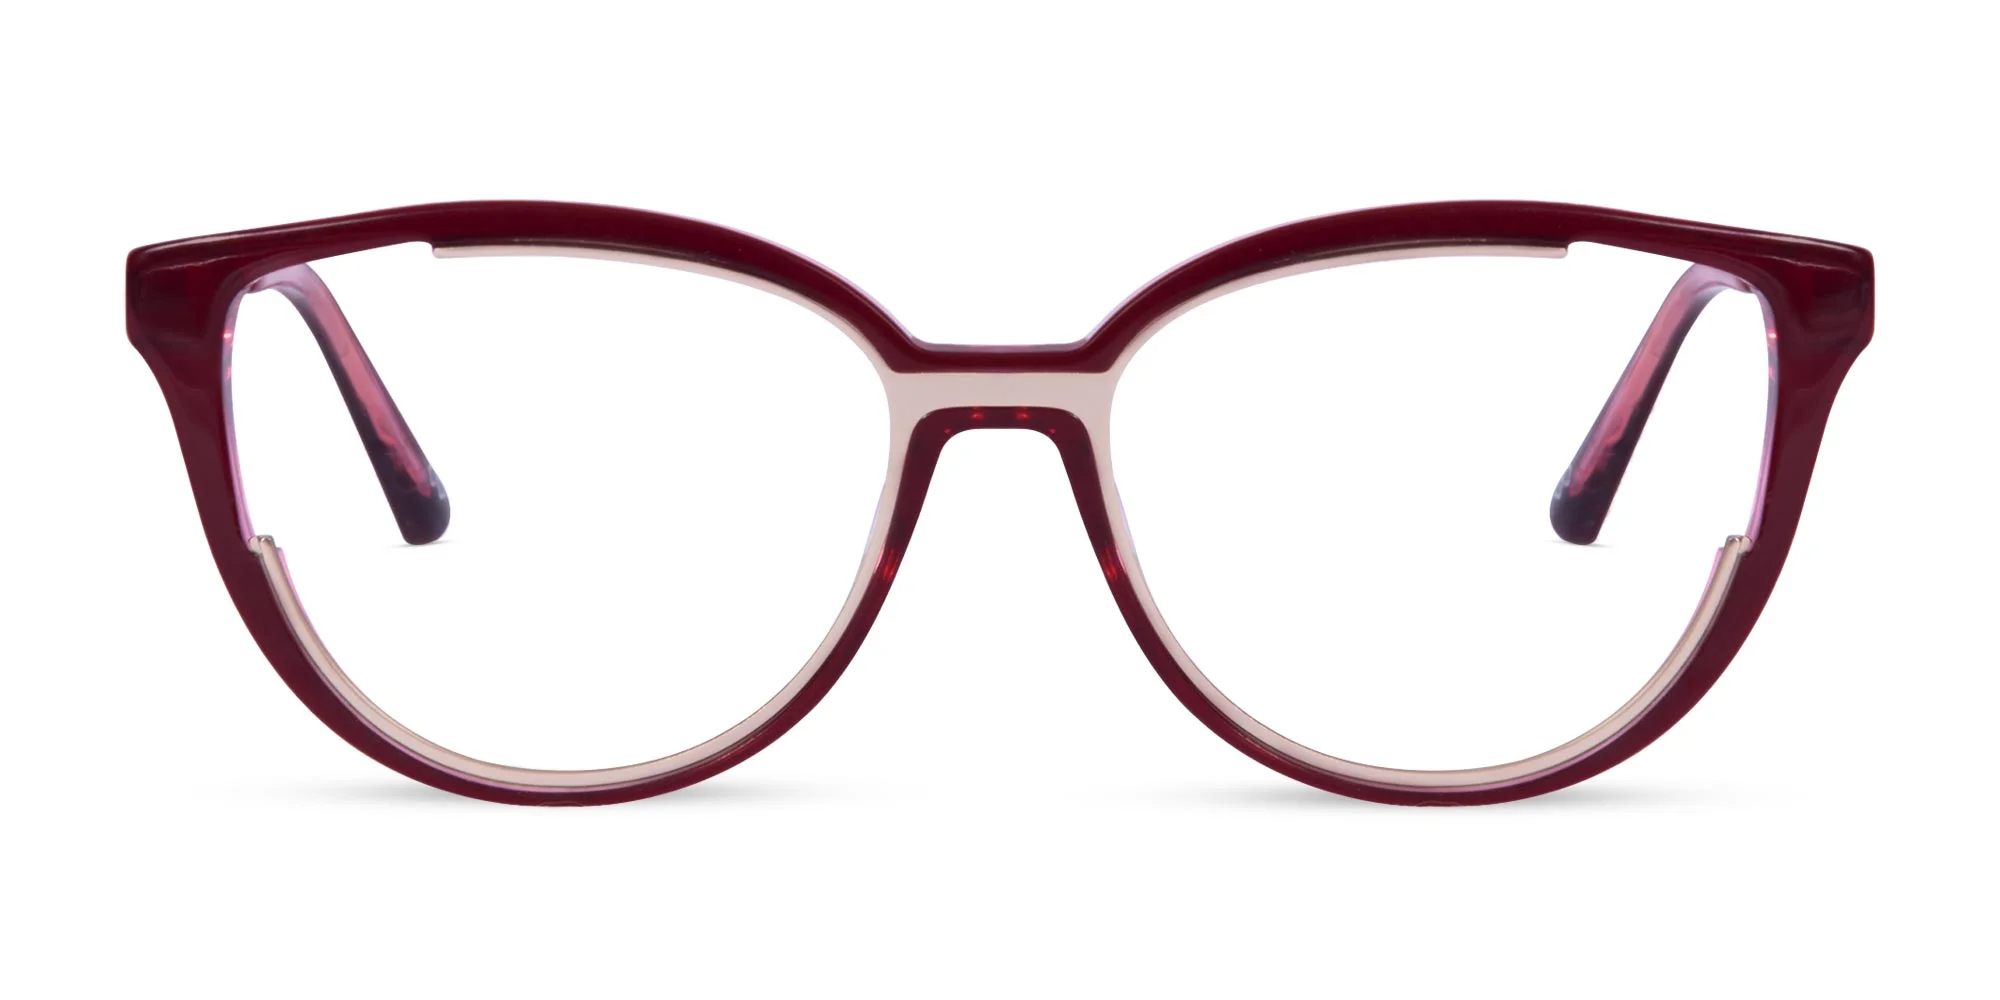 Modern Glasses For Women-1